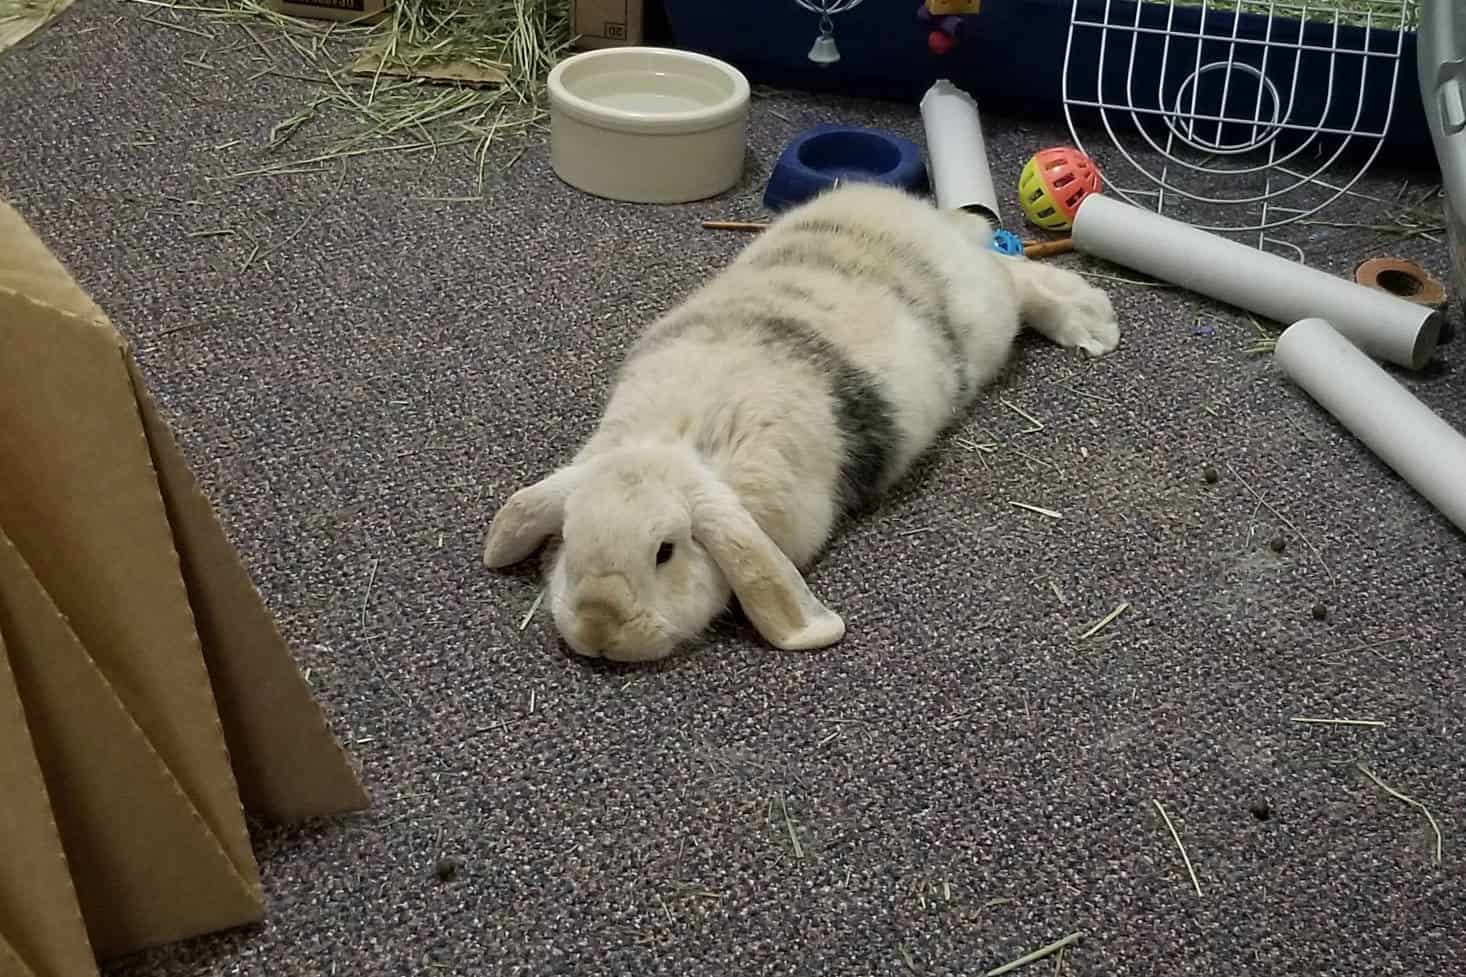 where do bunnies sleep